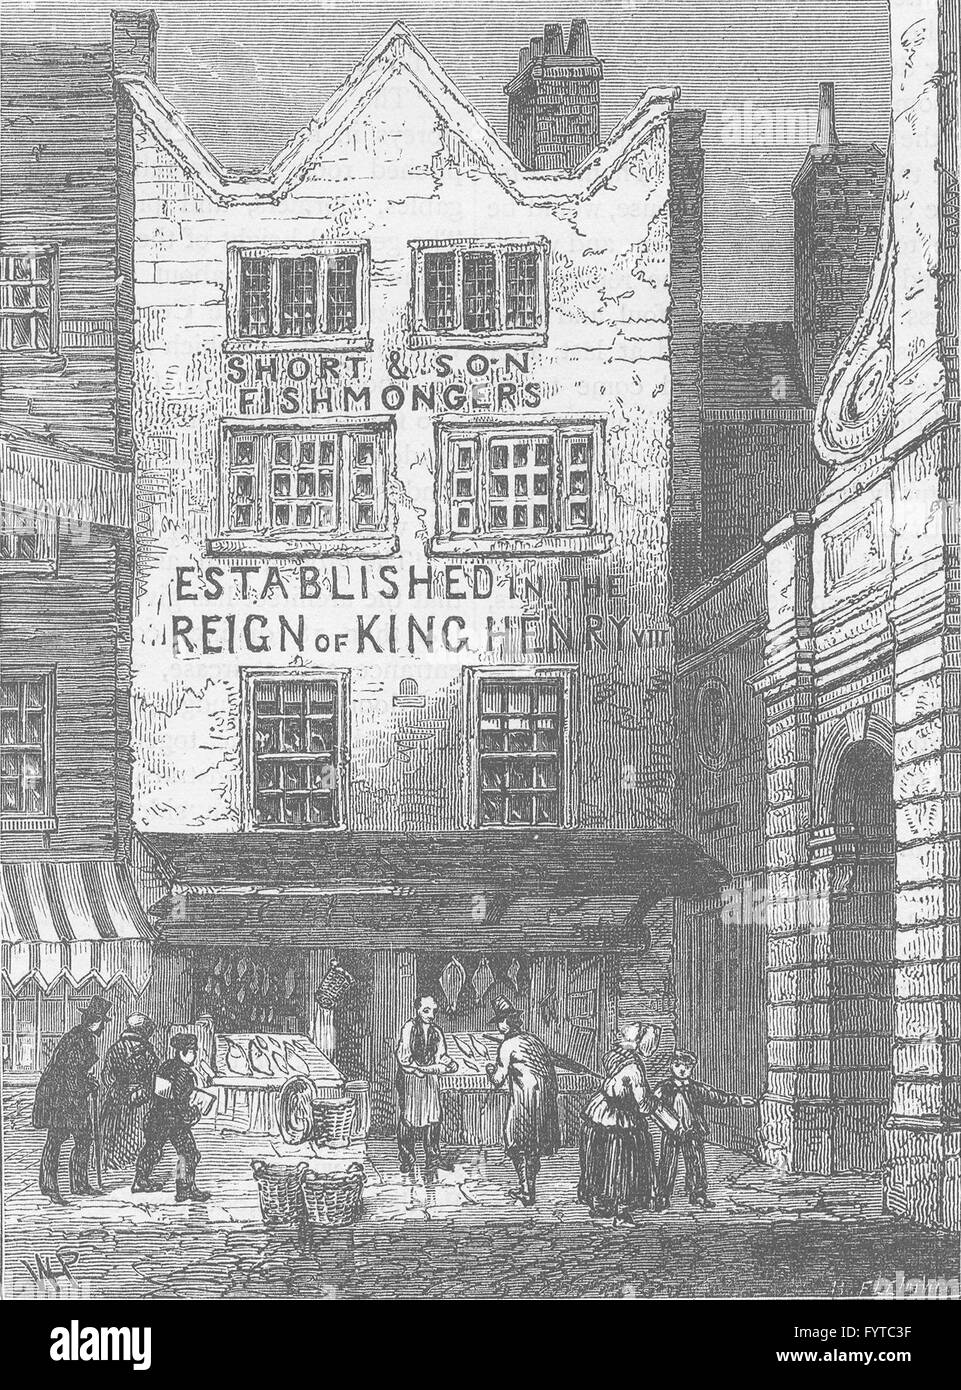 Tribunali: Il vecchio negozio di pesce da Temple Bar, 1846. Londra, antica stampa c1880 Foto Stock